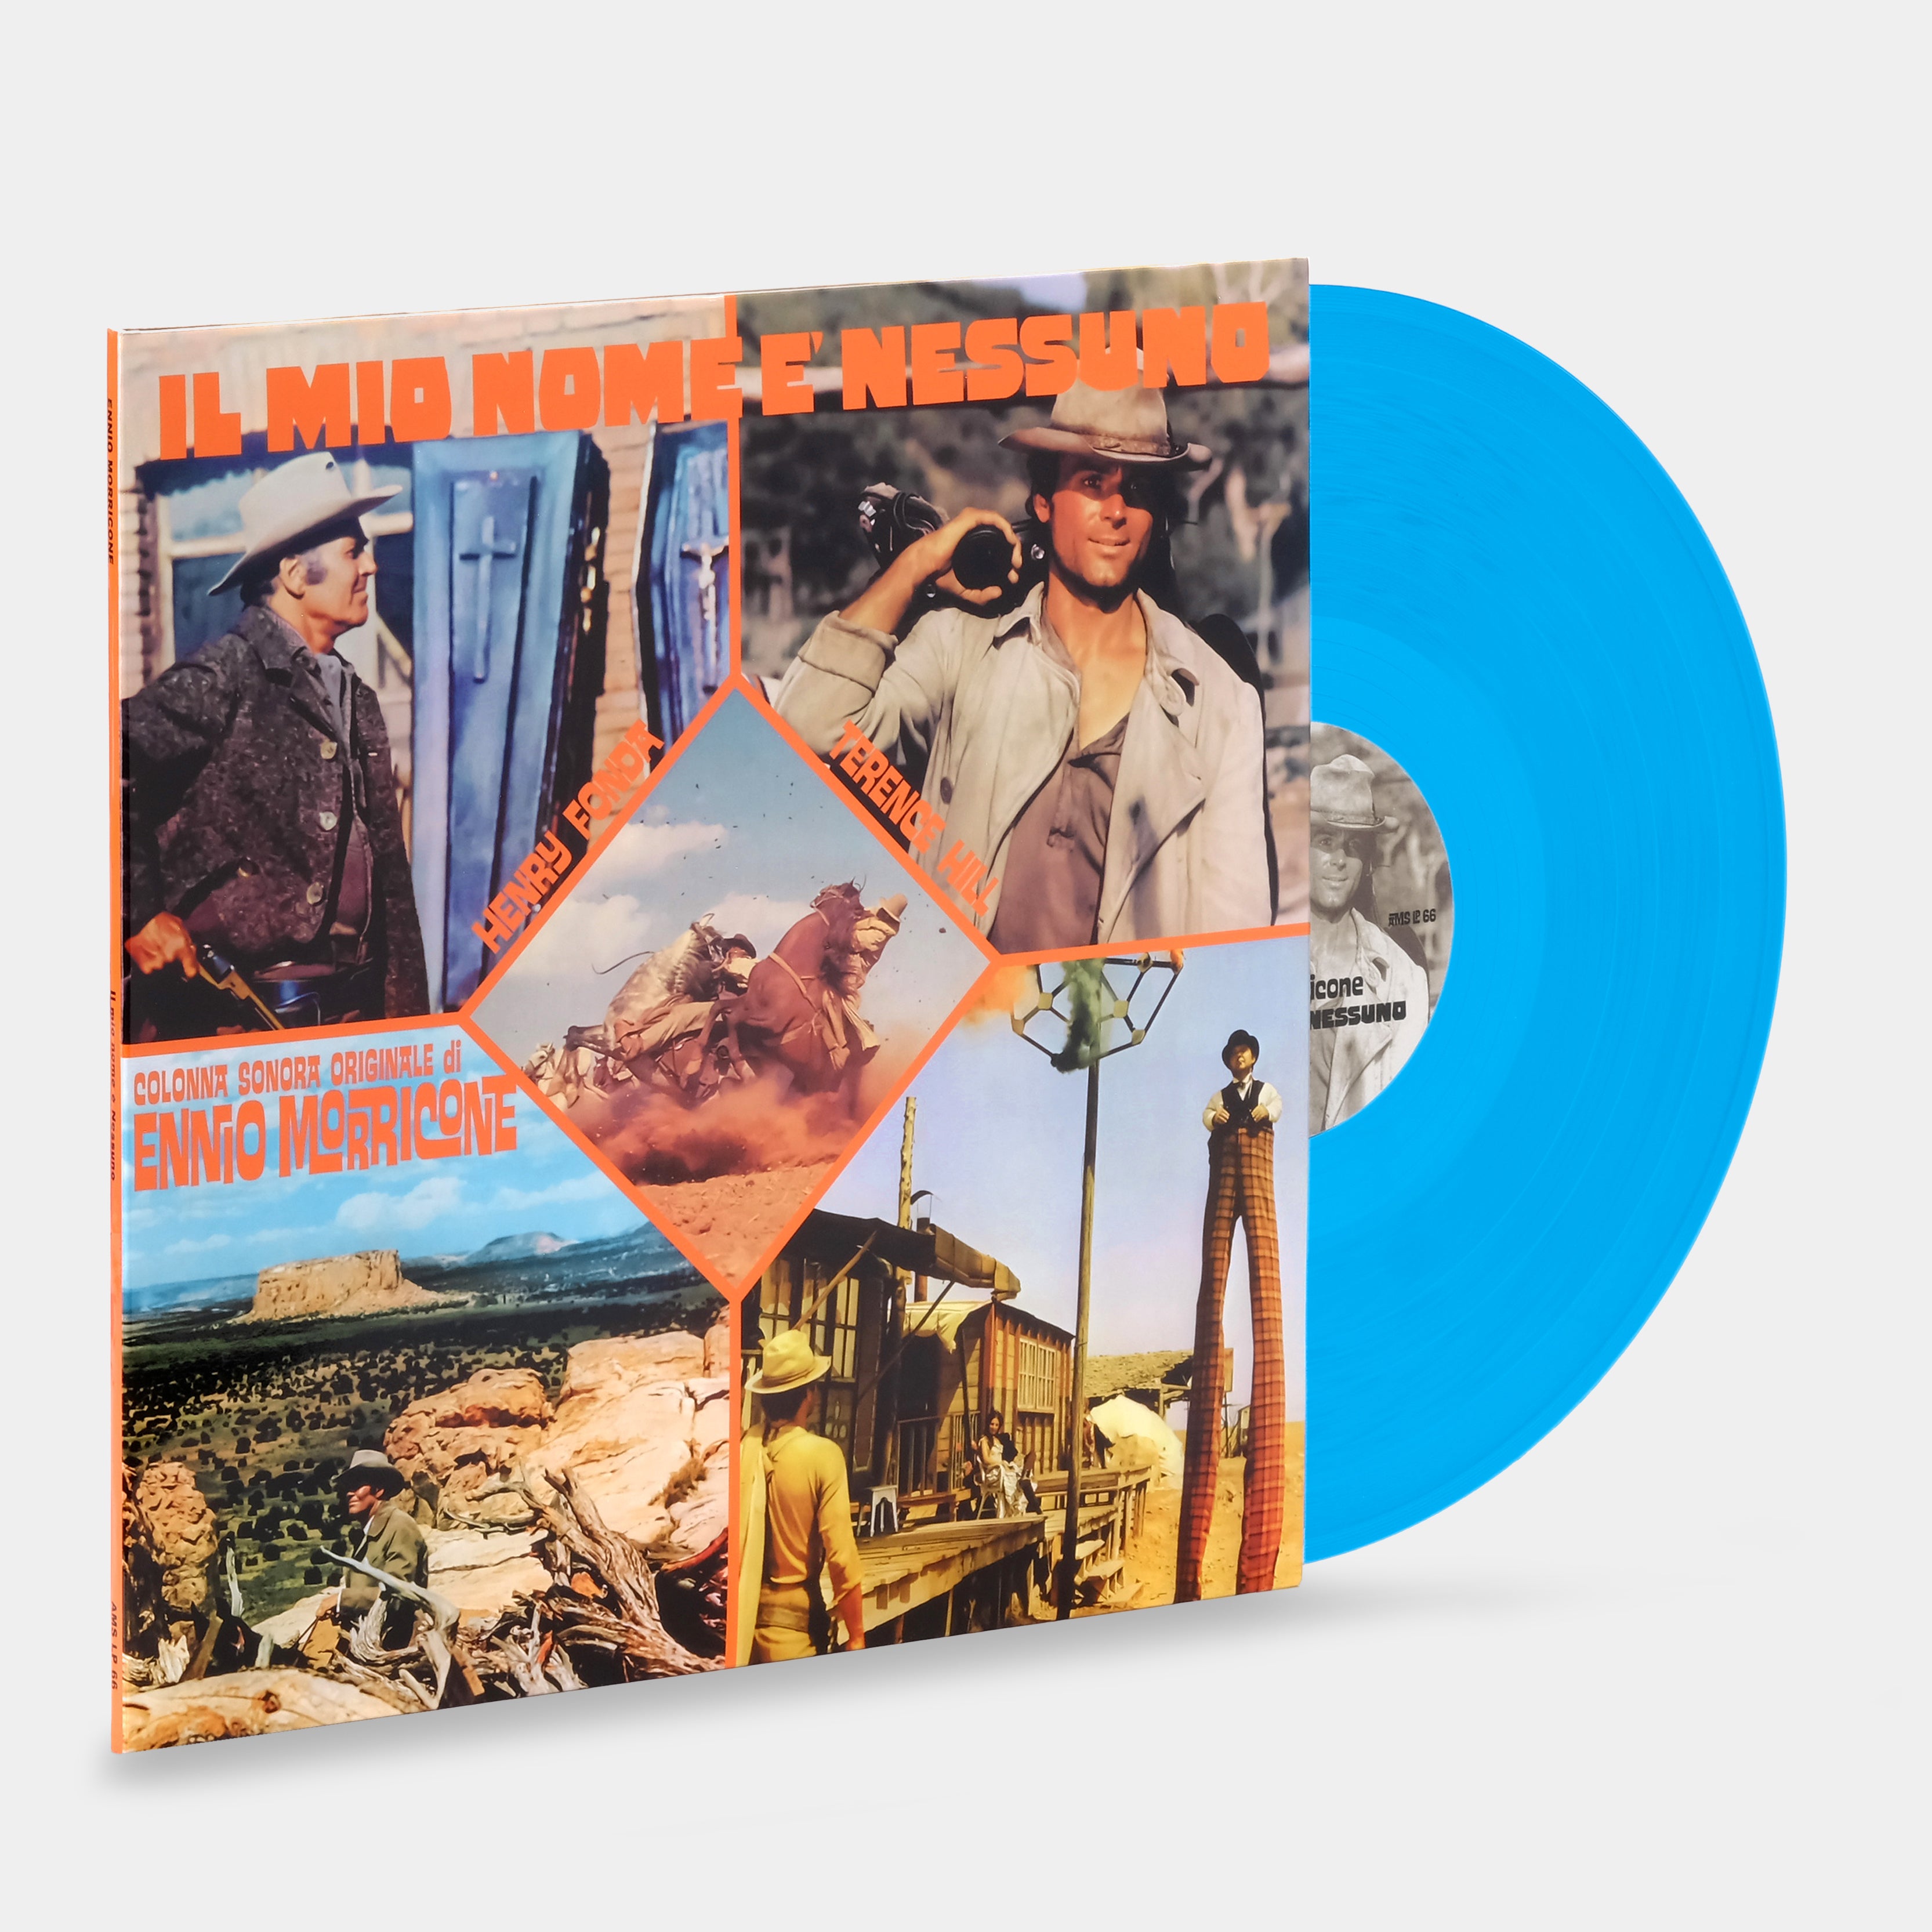 Ennio Morricone - Il Mio Nome E' Nessuno (Colonna Sonora Originale) LP Blue Vinyl Record